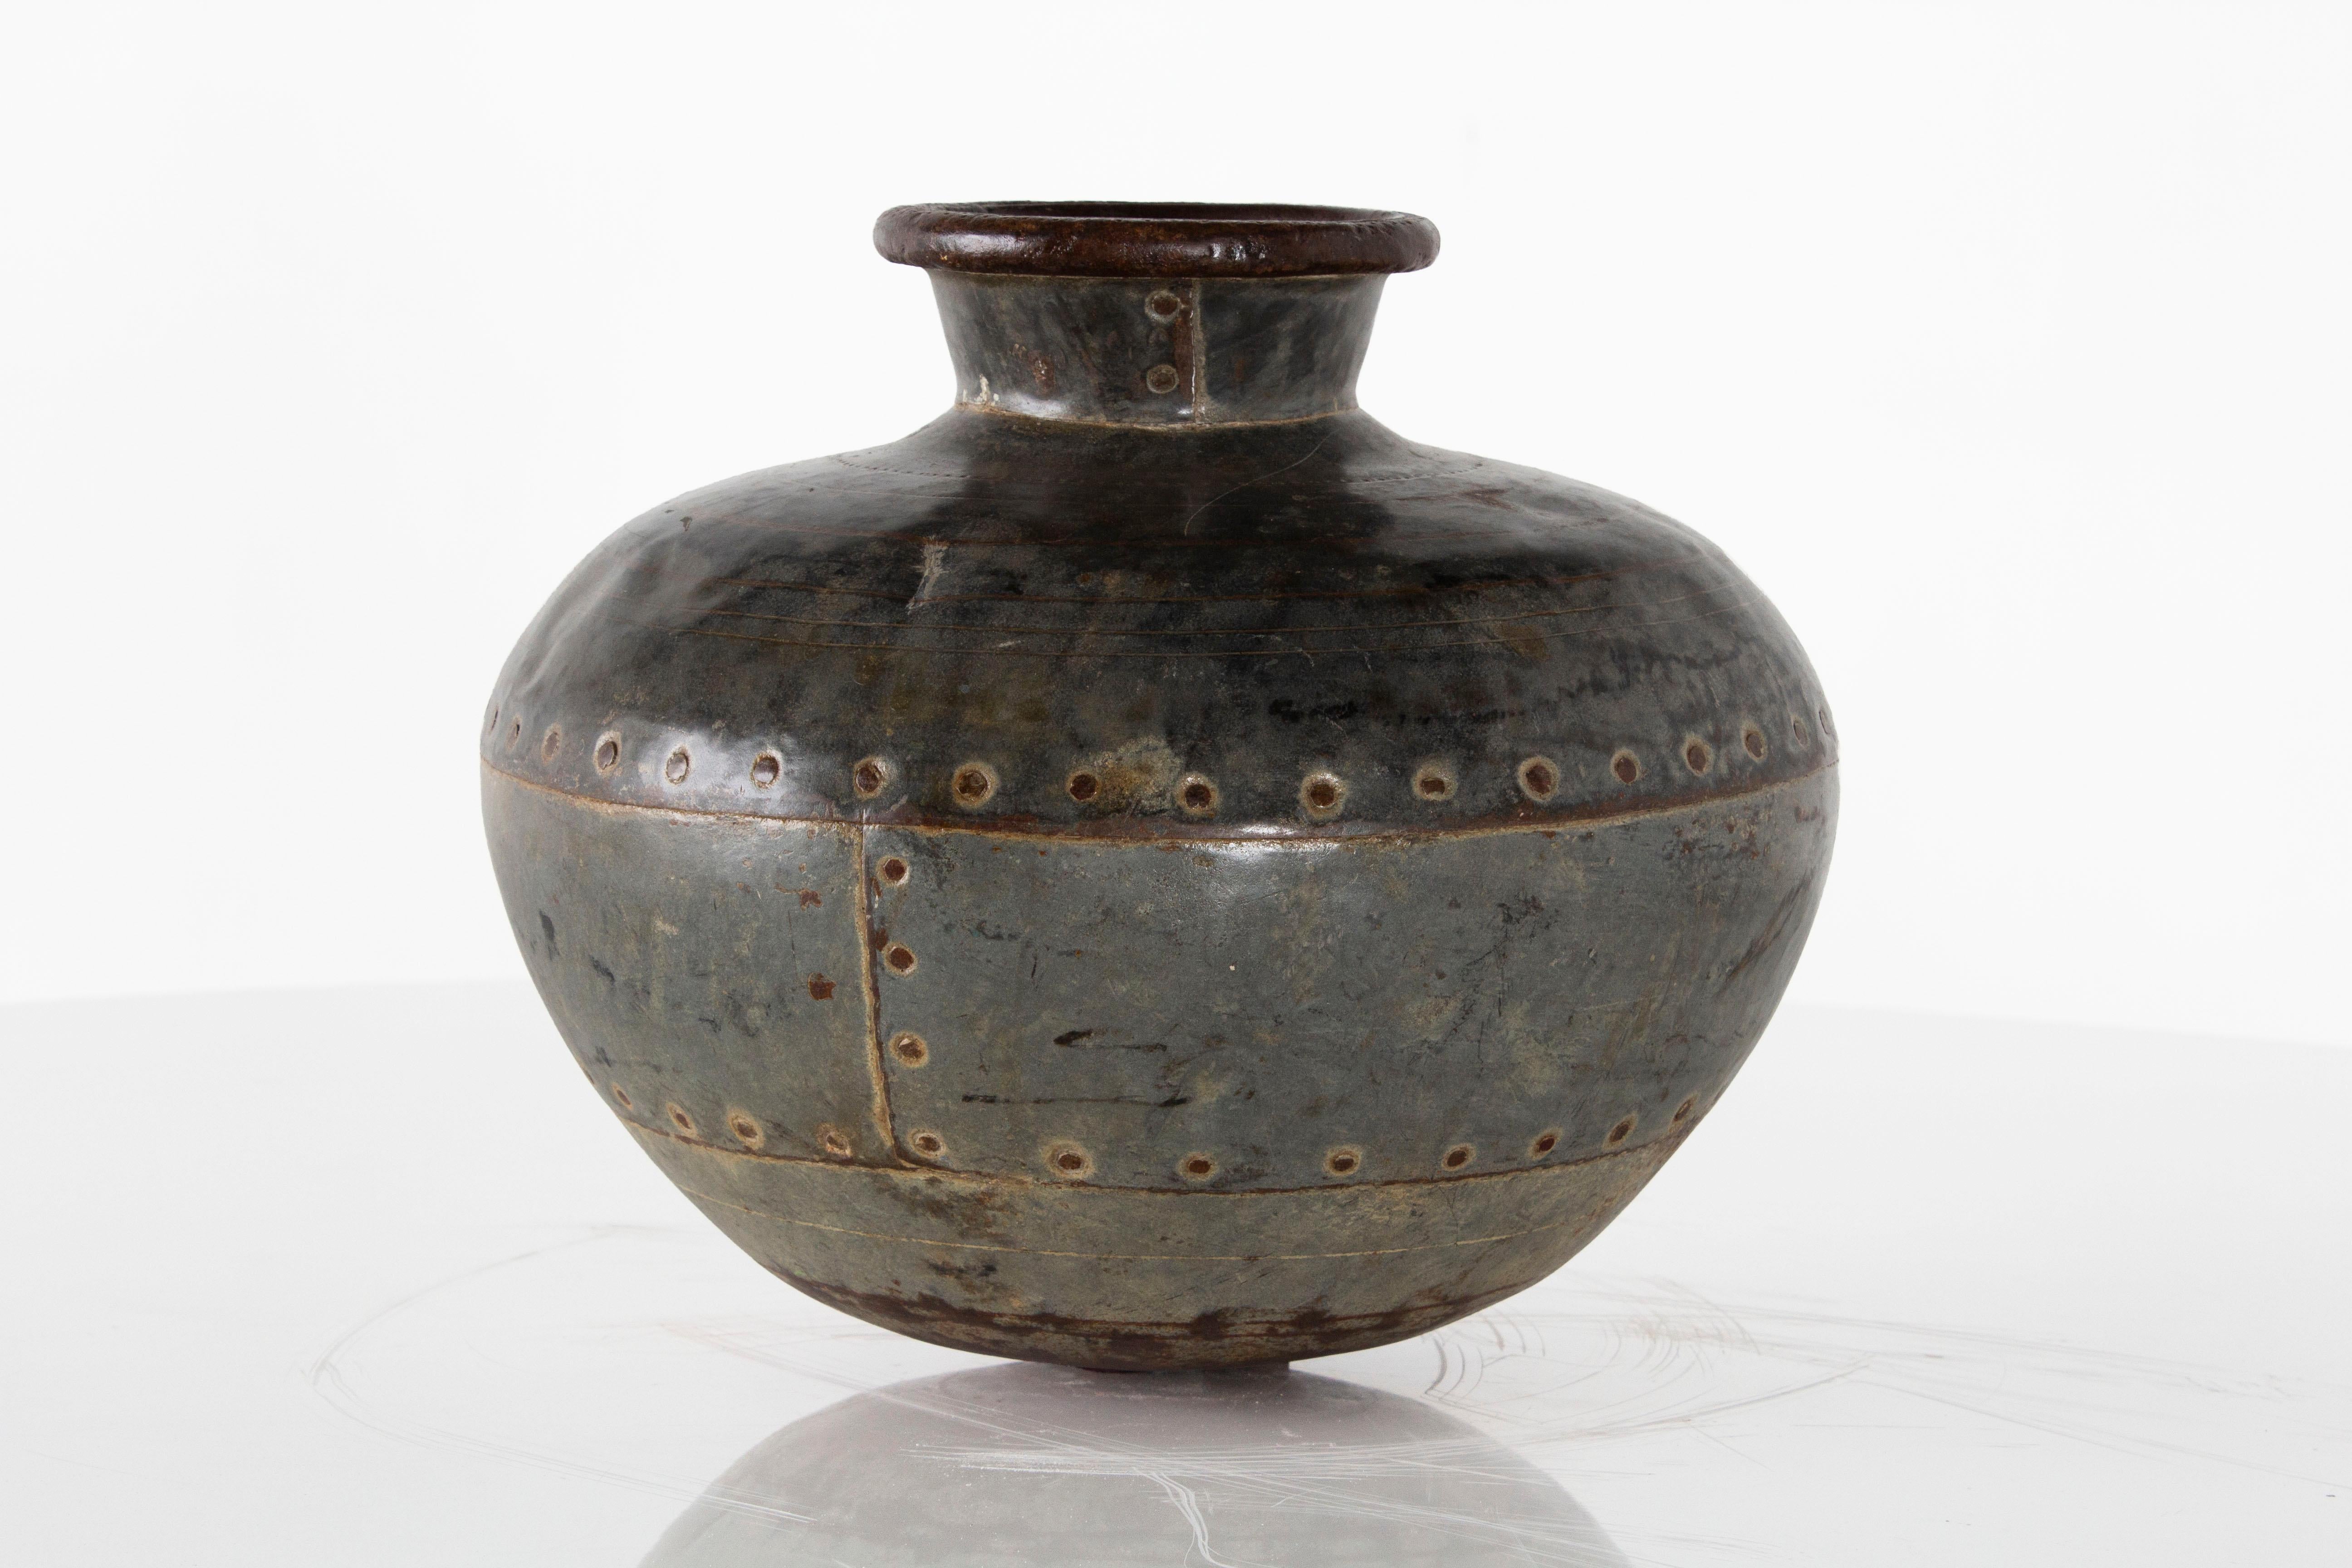 Vintage rivet urn from Europe 

Pot, vase, jar intended for decor use.